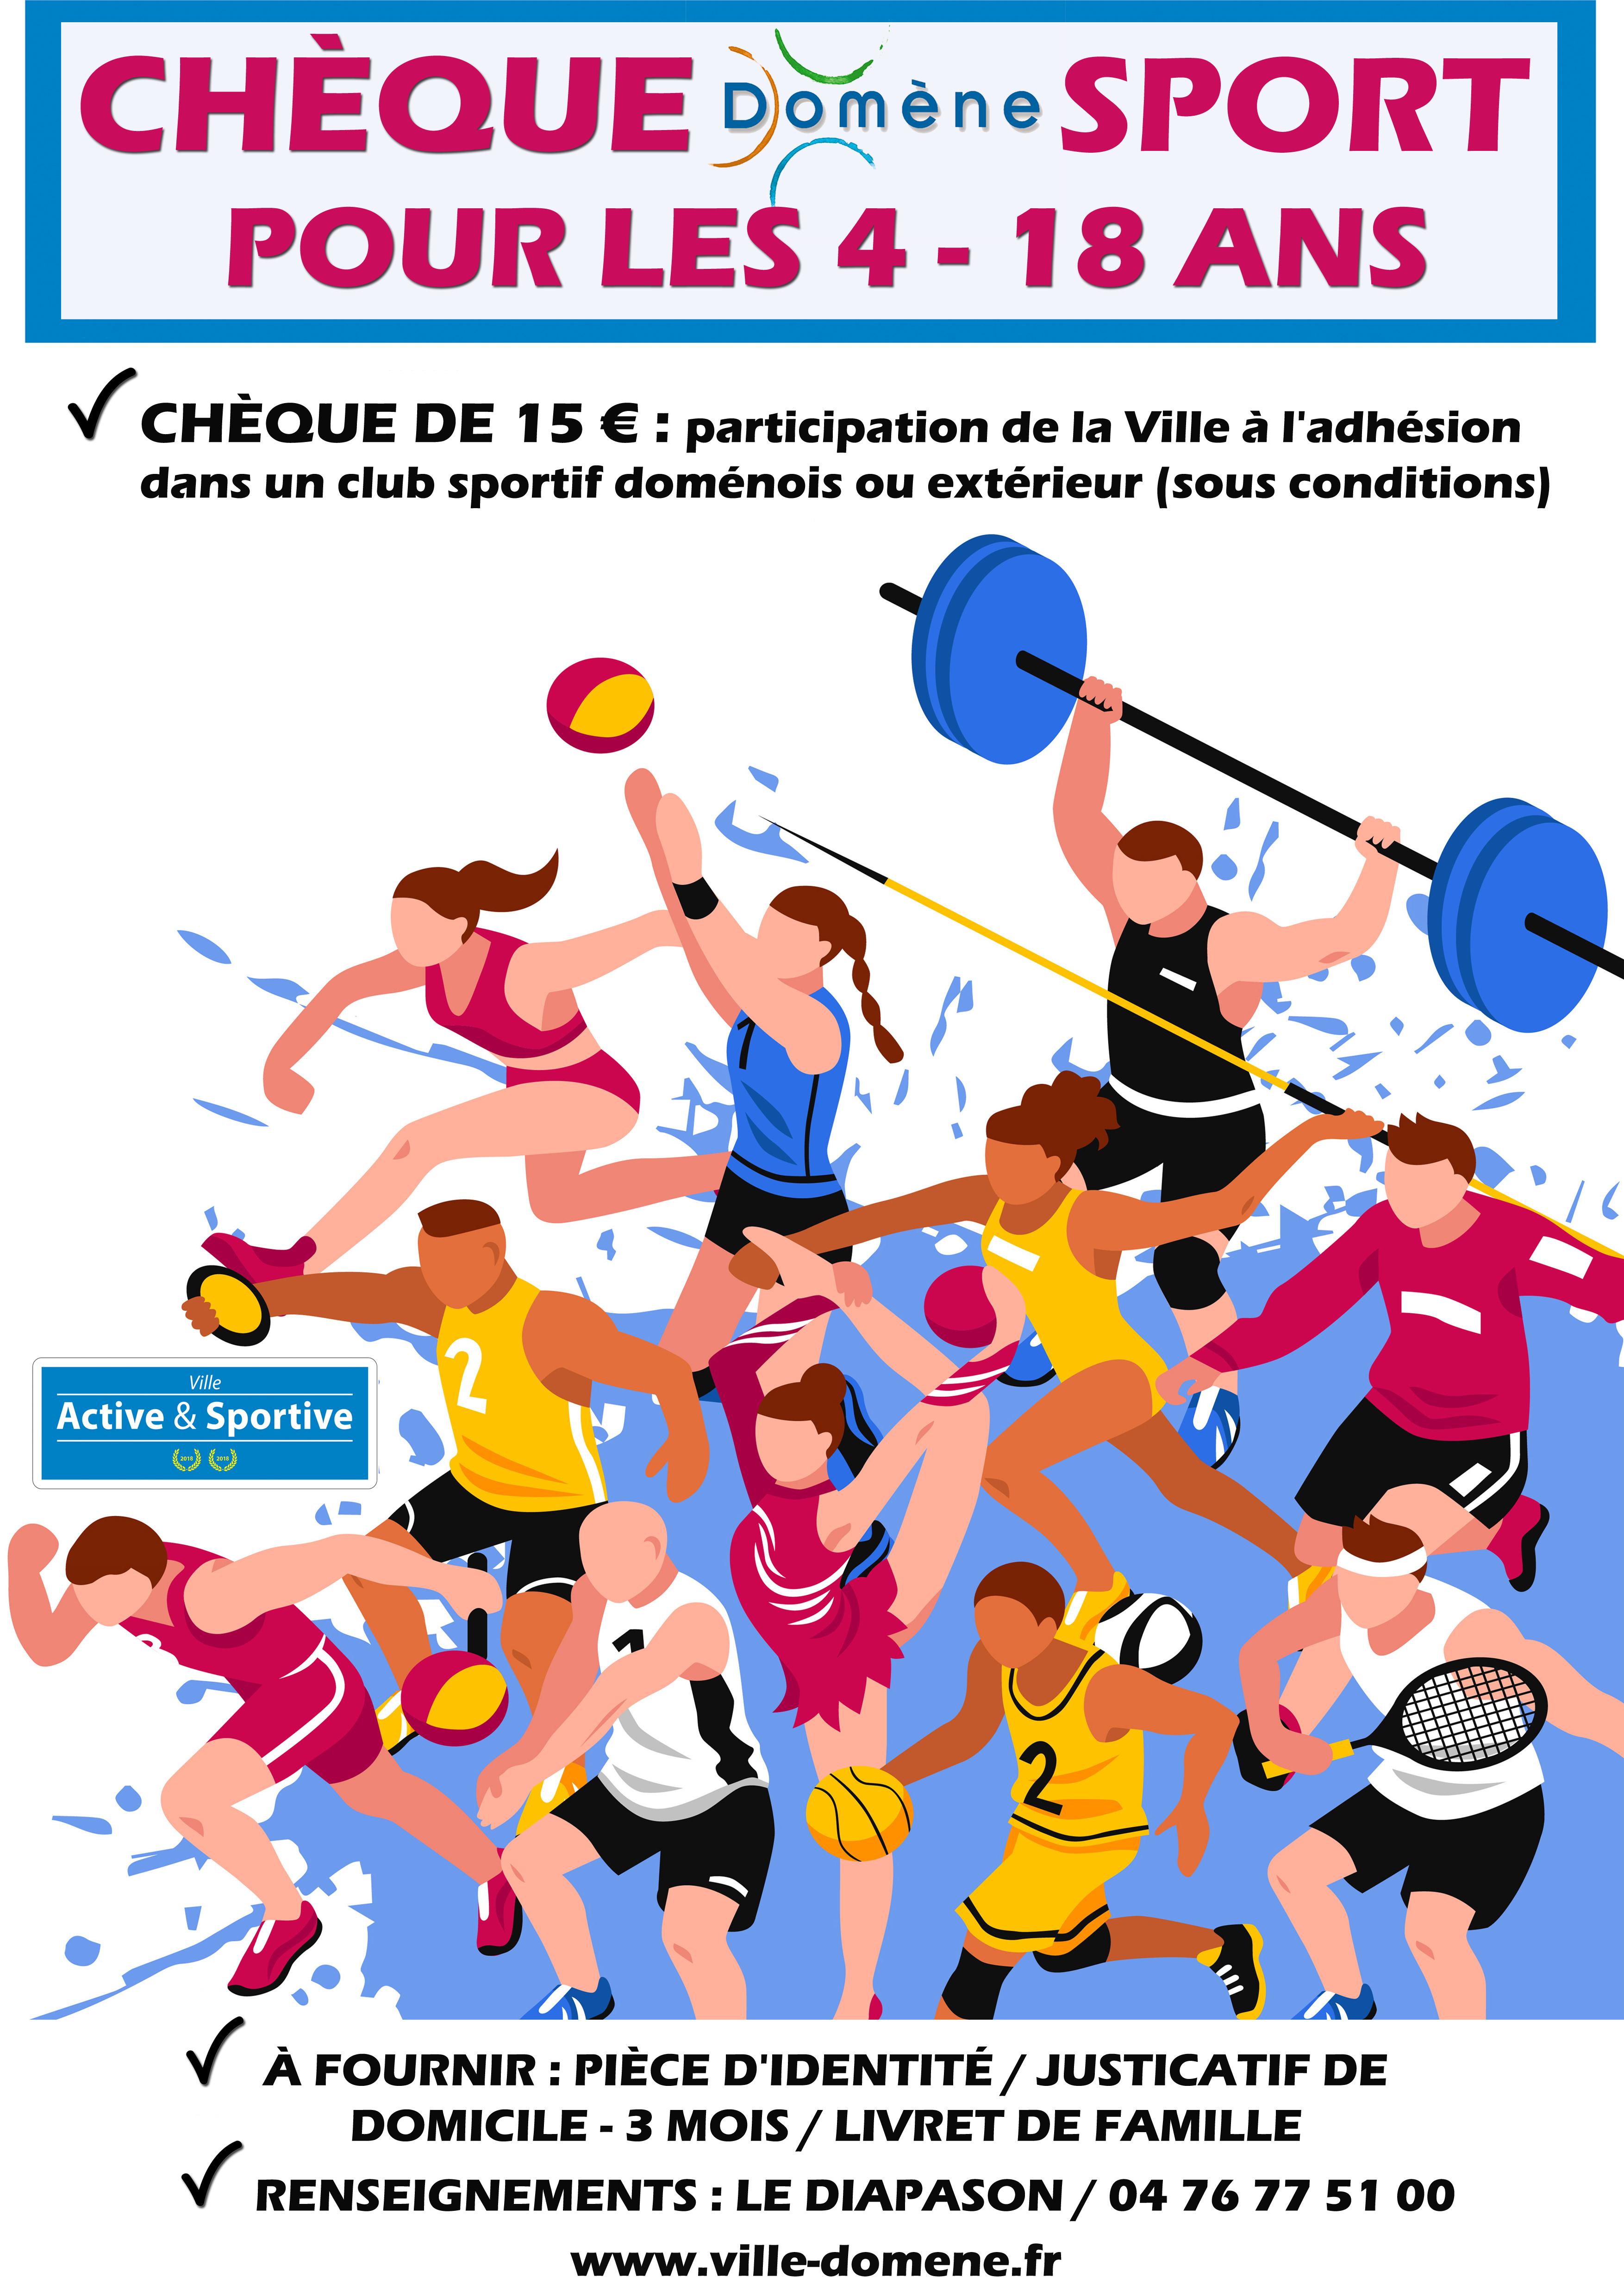 Image de couverture - Chèque Domène Sport